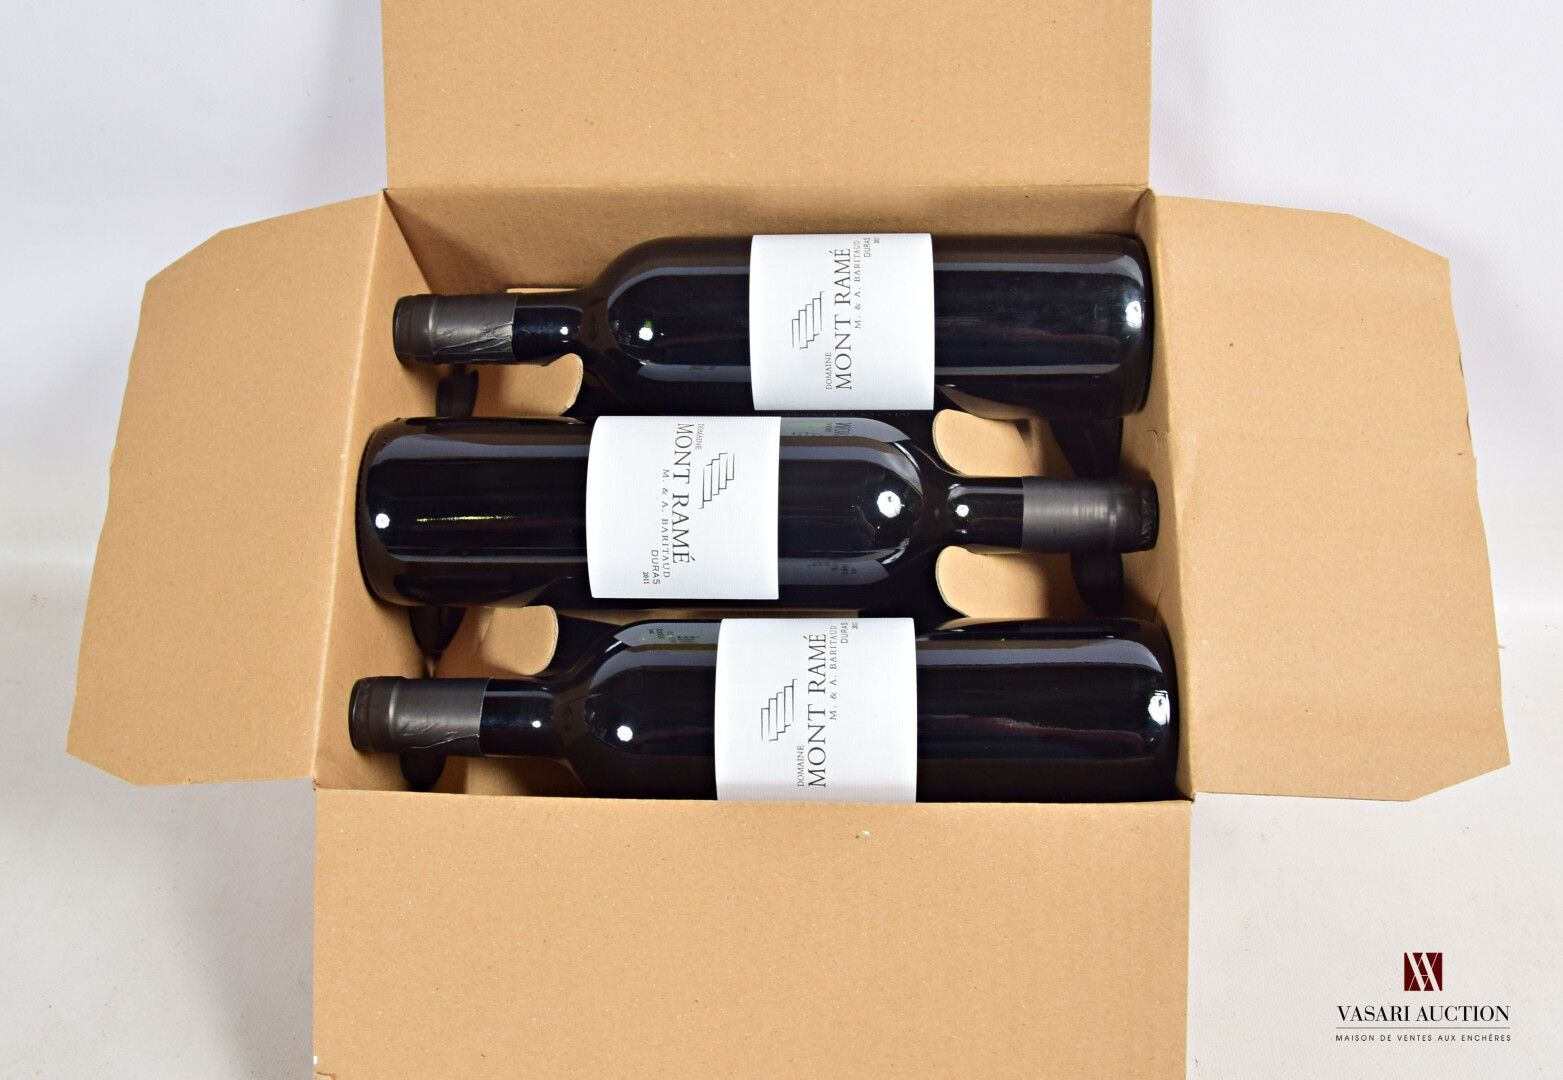 Null 6 bottles Domaine MONT RAMÉ Côtes de Duras 2011

	Presentation and level, i&hellip;